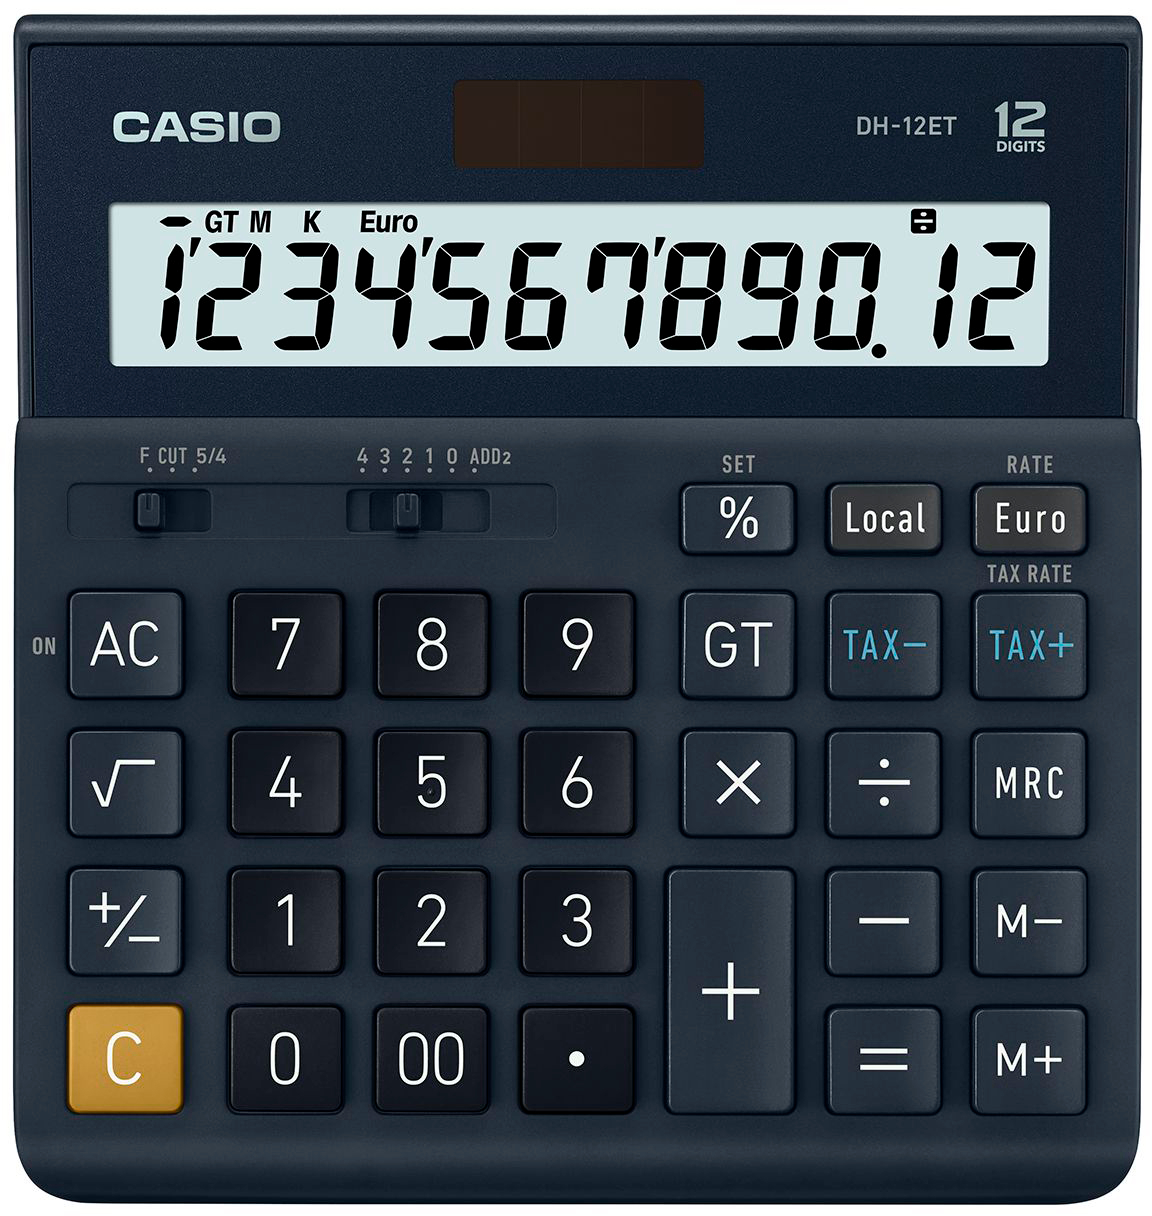 CASIO Calculatrice DH-12ET